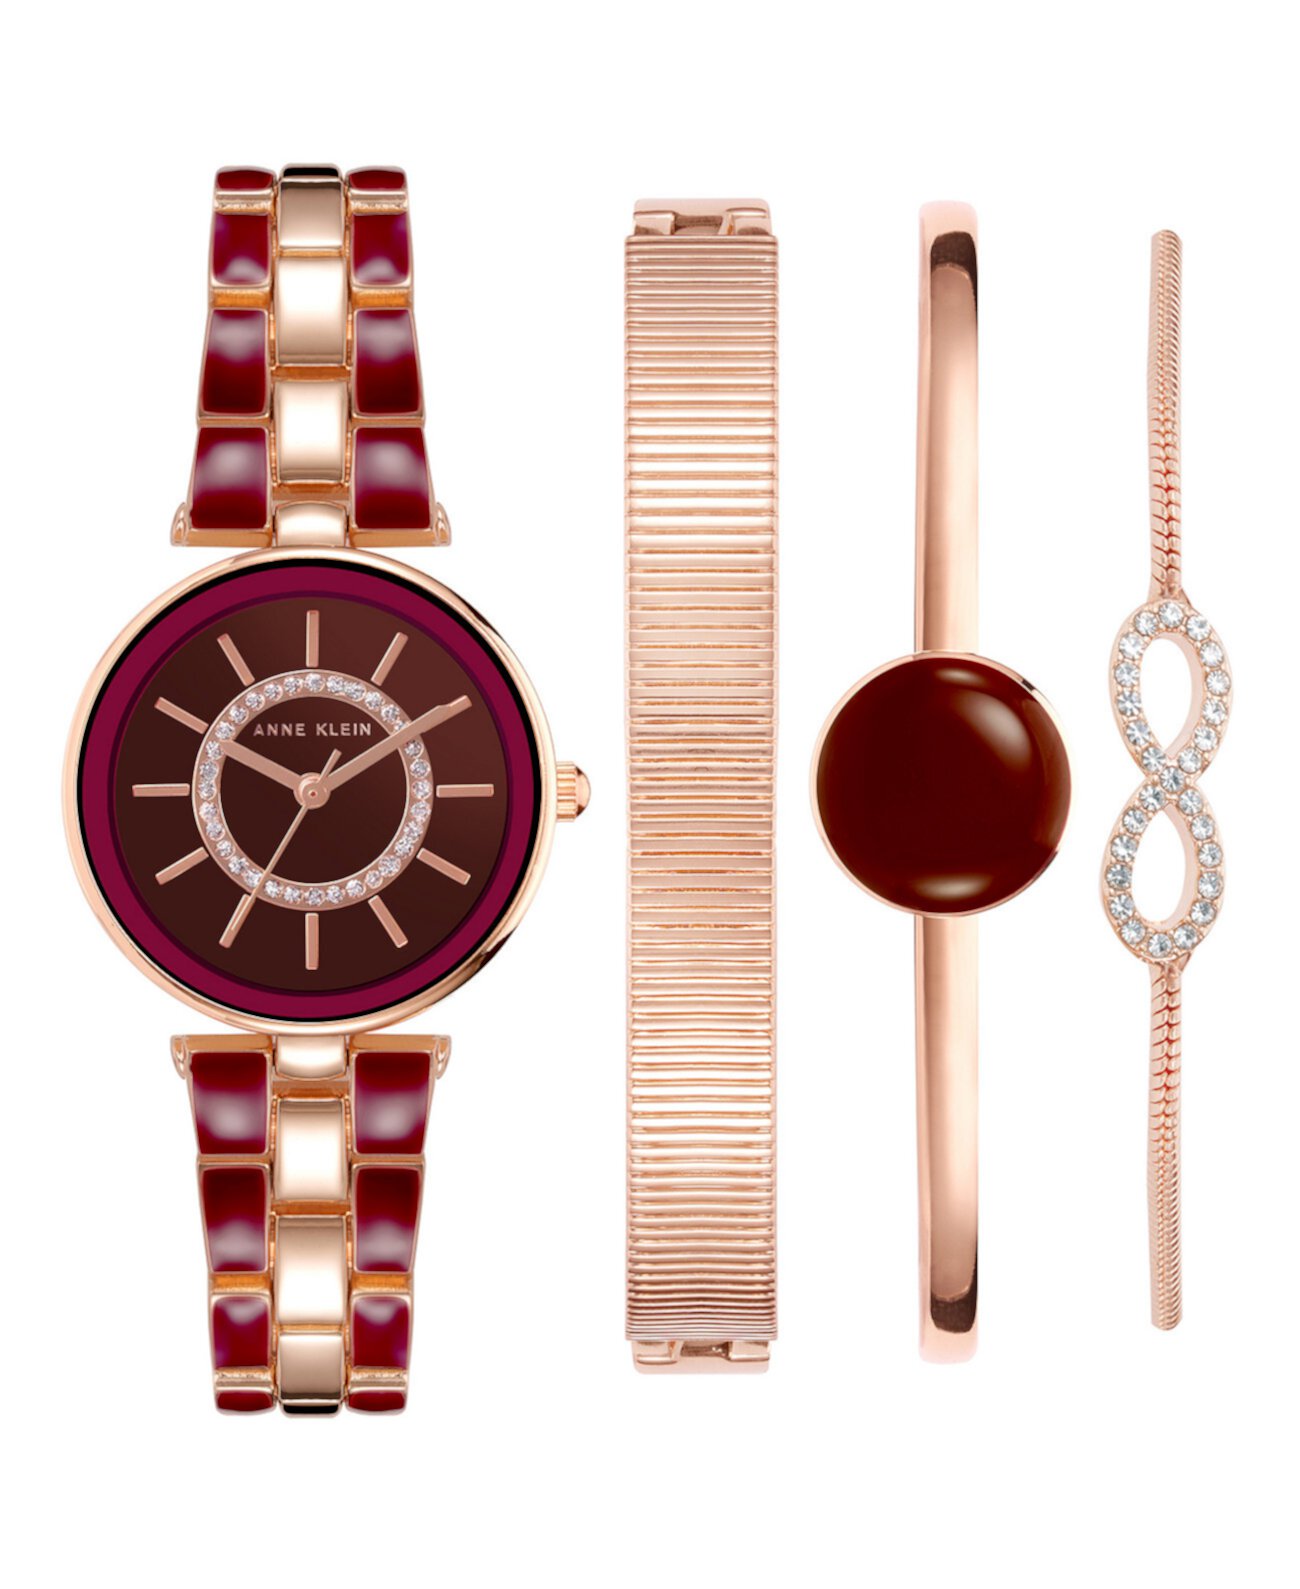 Женский браслет из сплава цвета розового золота с бордовой эмалью и кристаллами Модные часы 34 мм, набор из 4 предметов Anne Klein